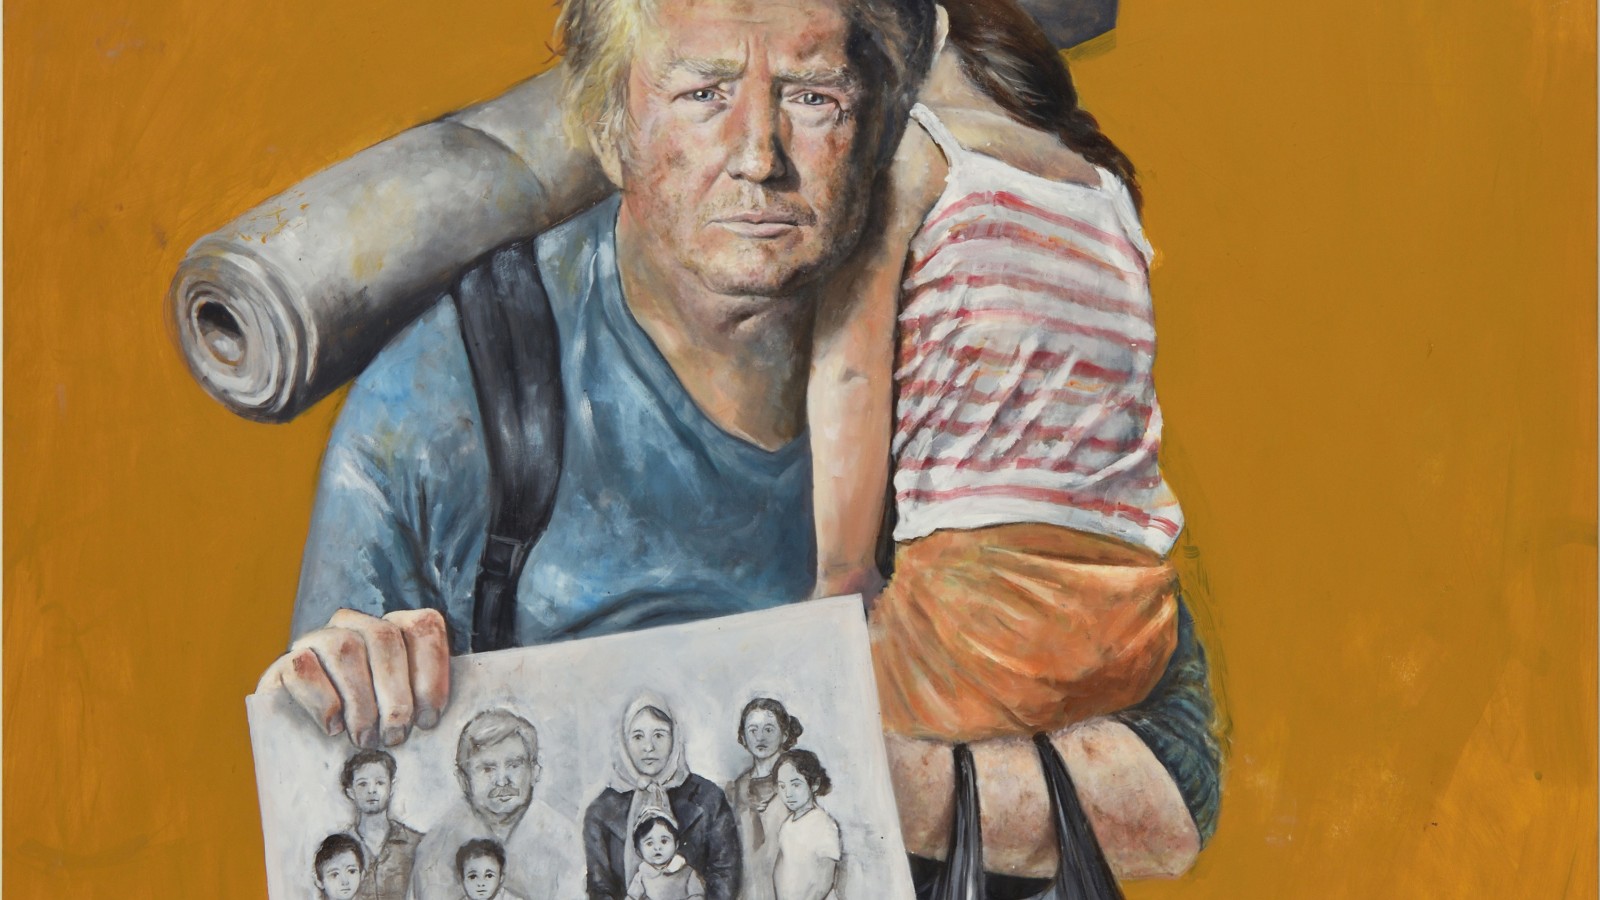 Artist Turns Trump Into A Refugee Cnn Video 1977